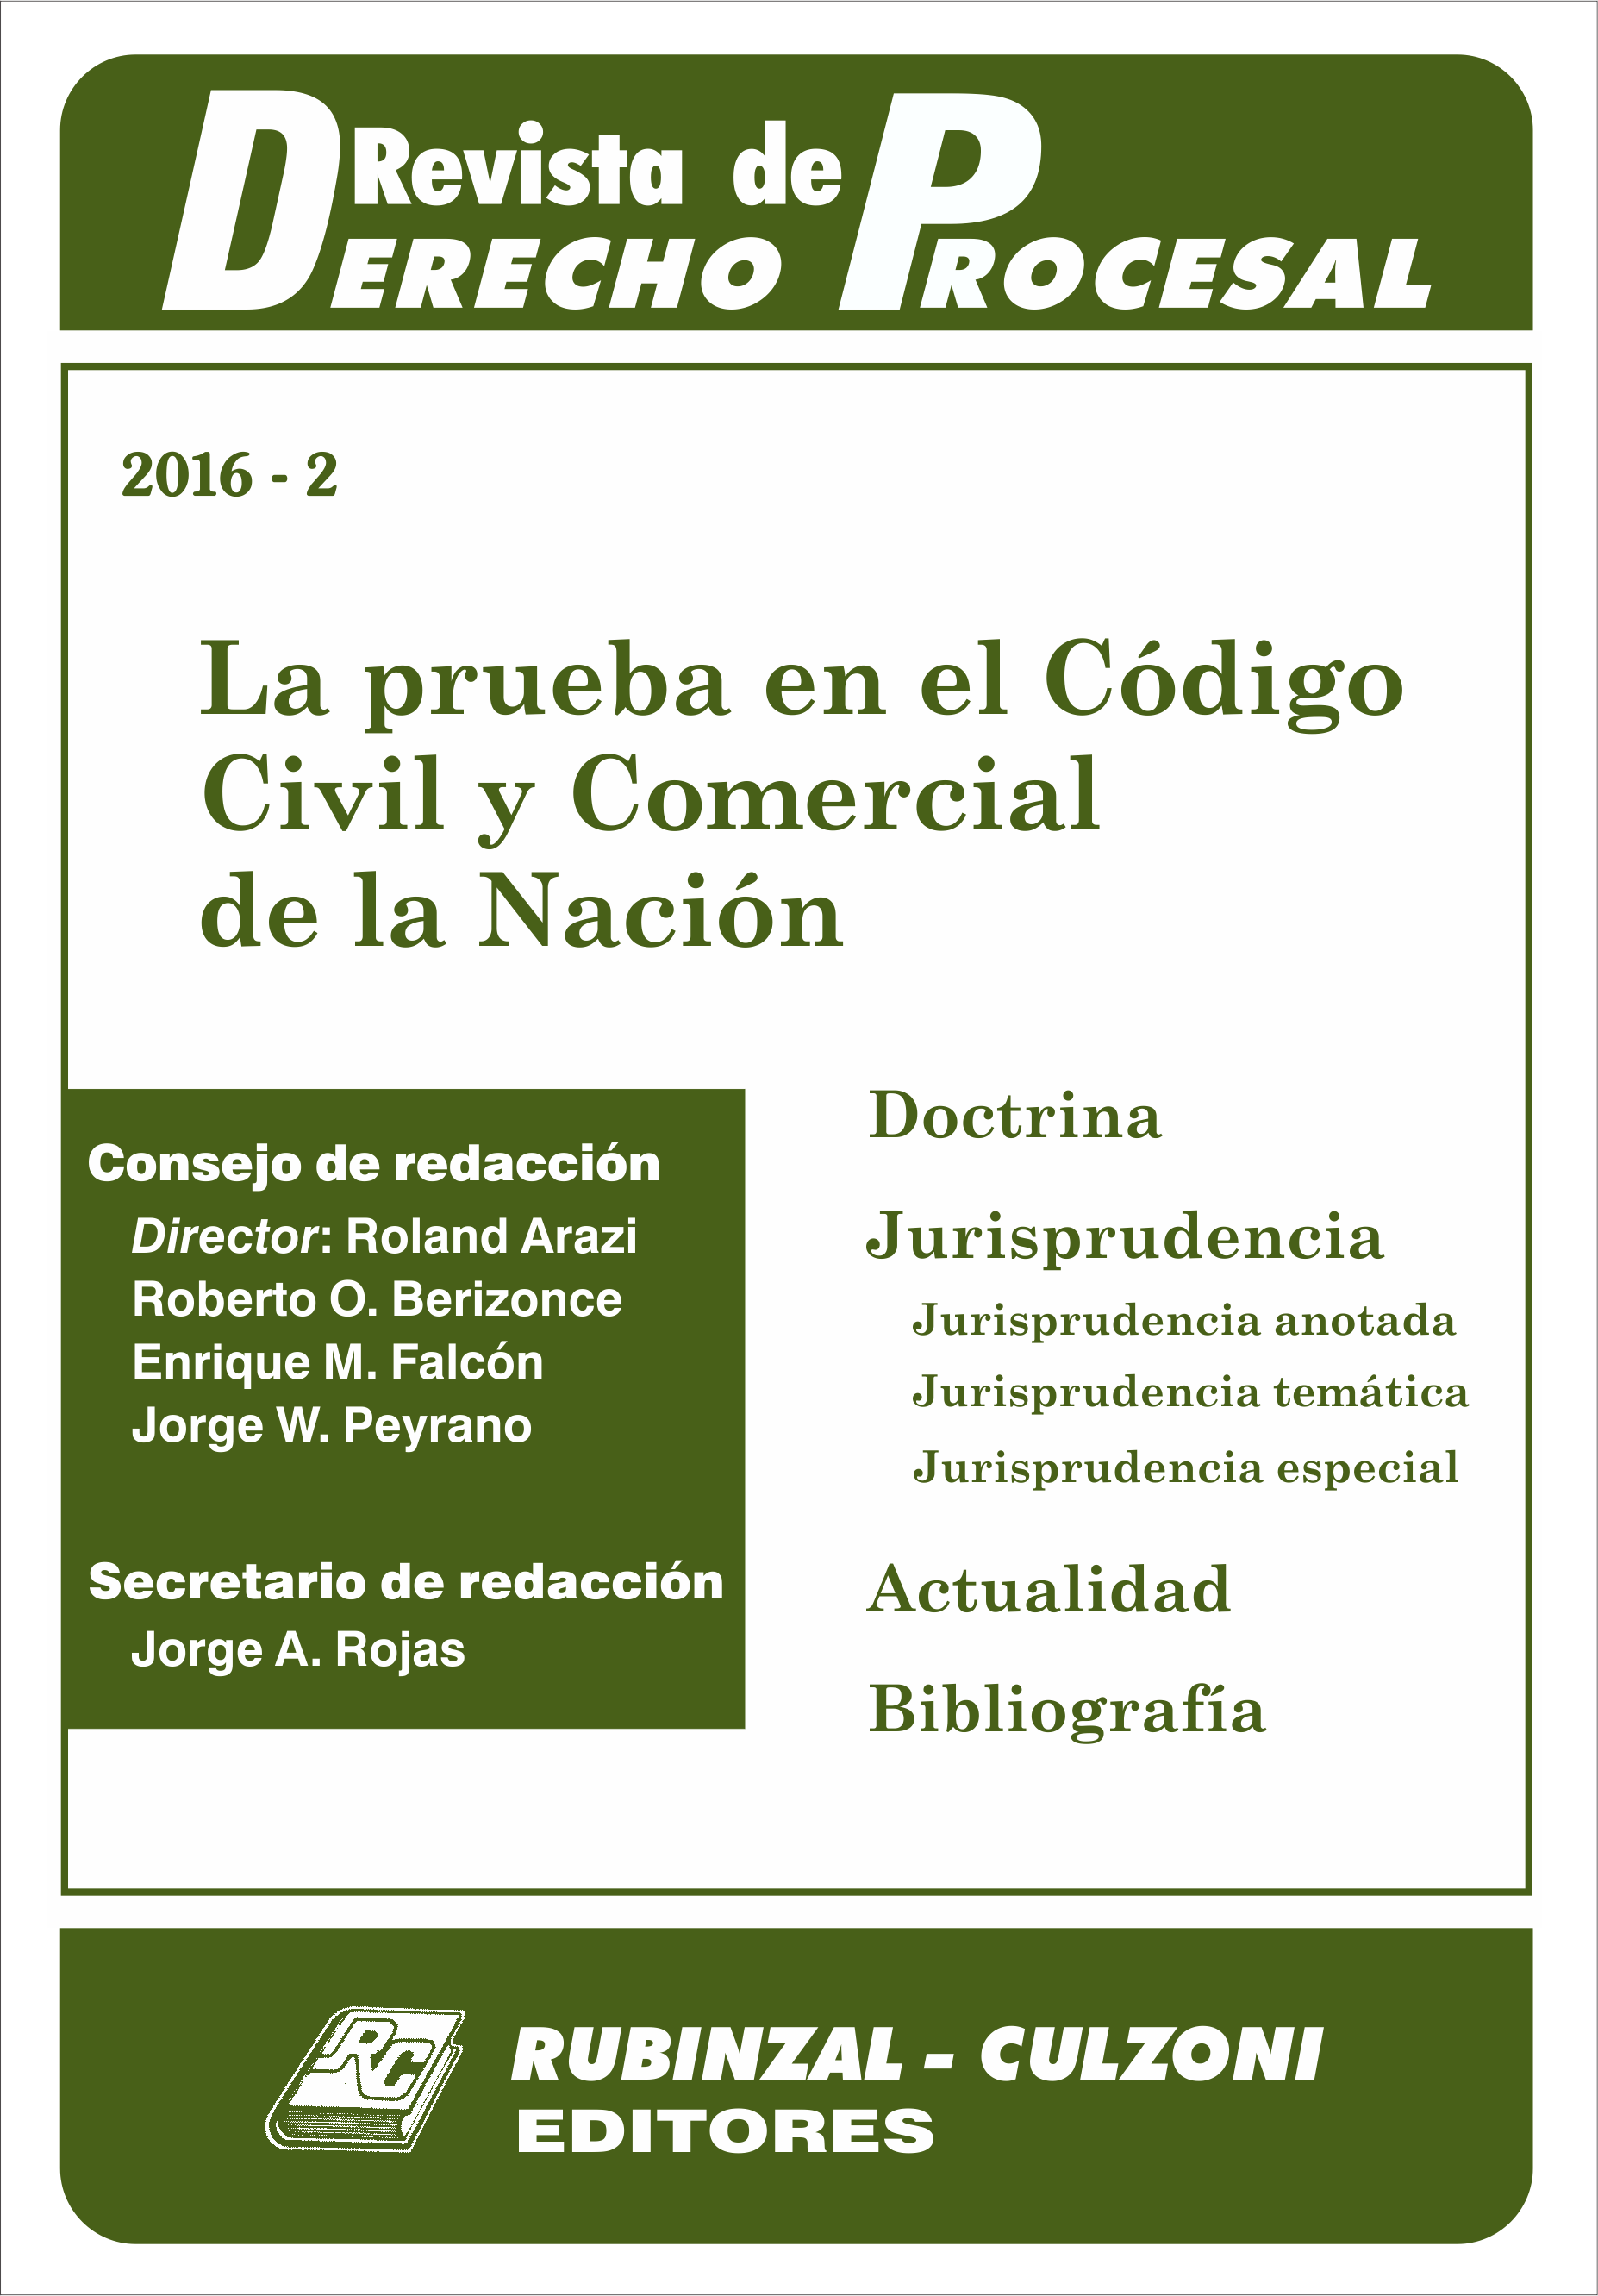 Revista de Derecho Procesal - La prueba en el Código Civil y Comercial de la Nación